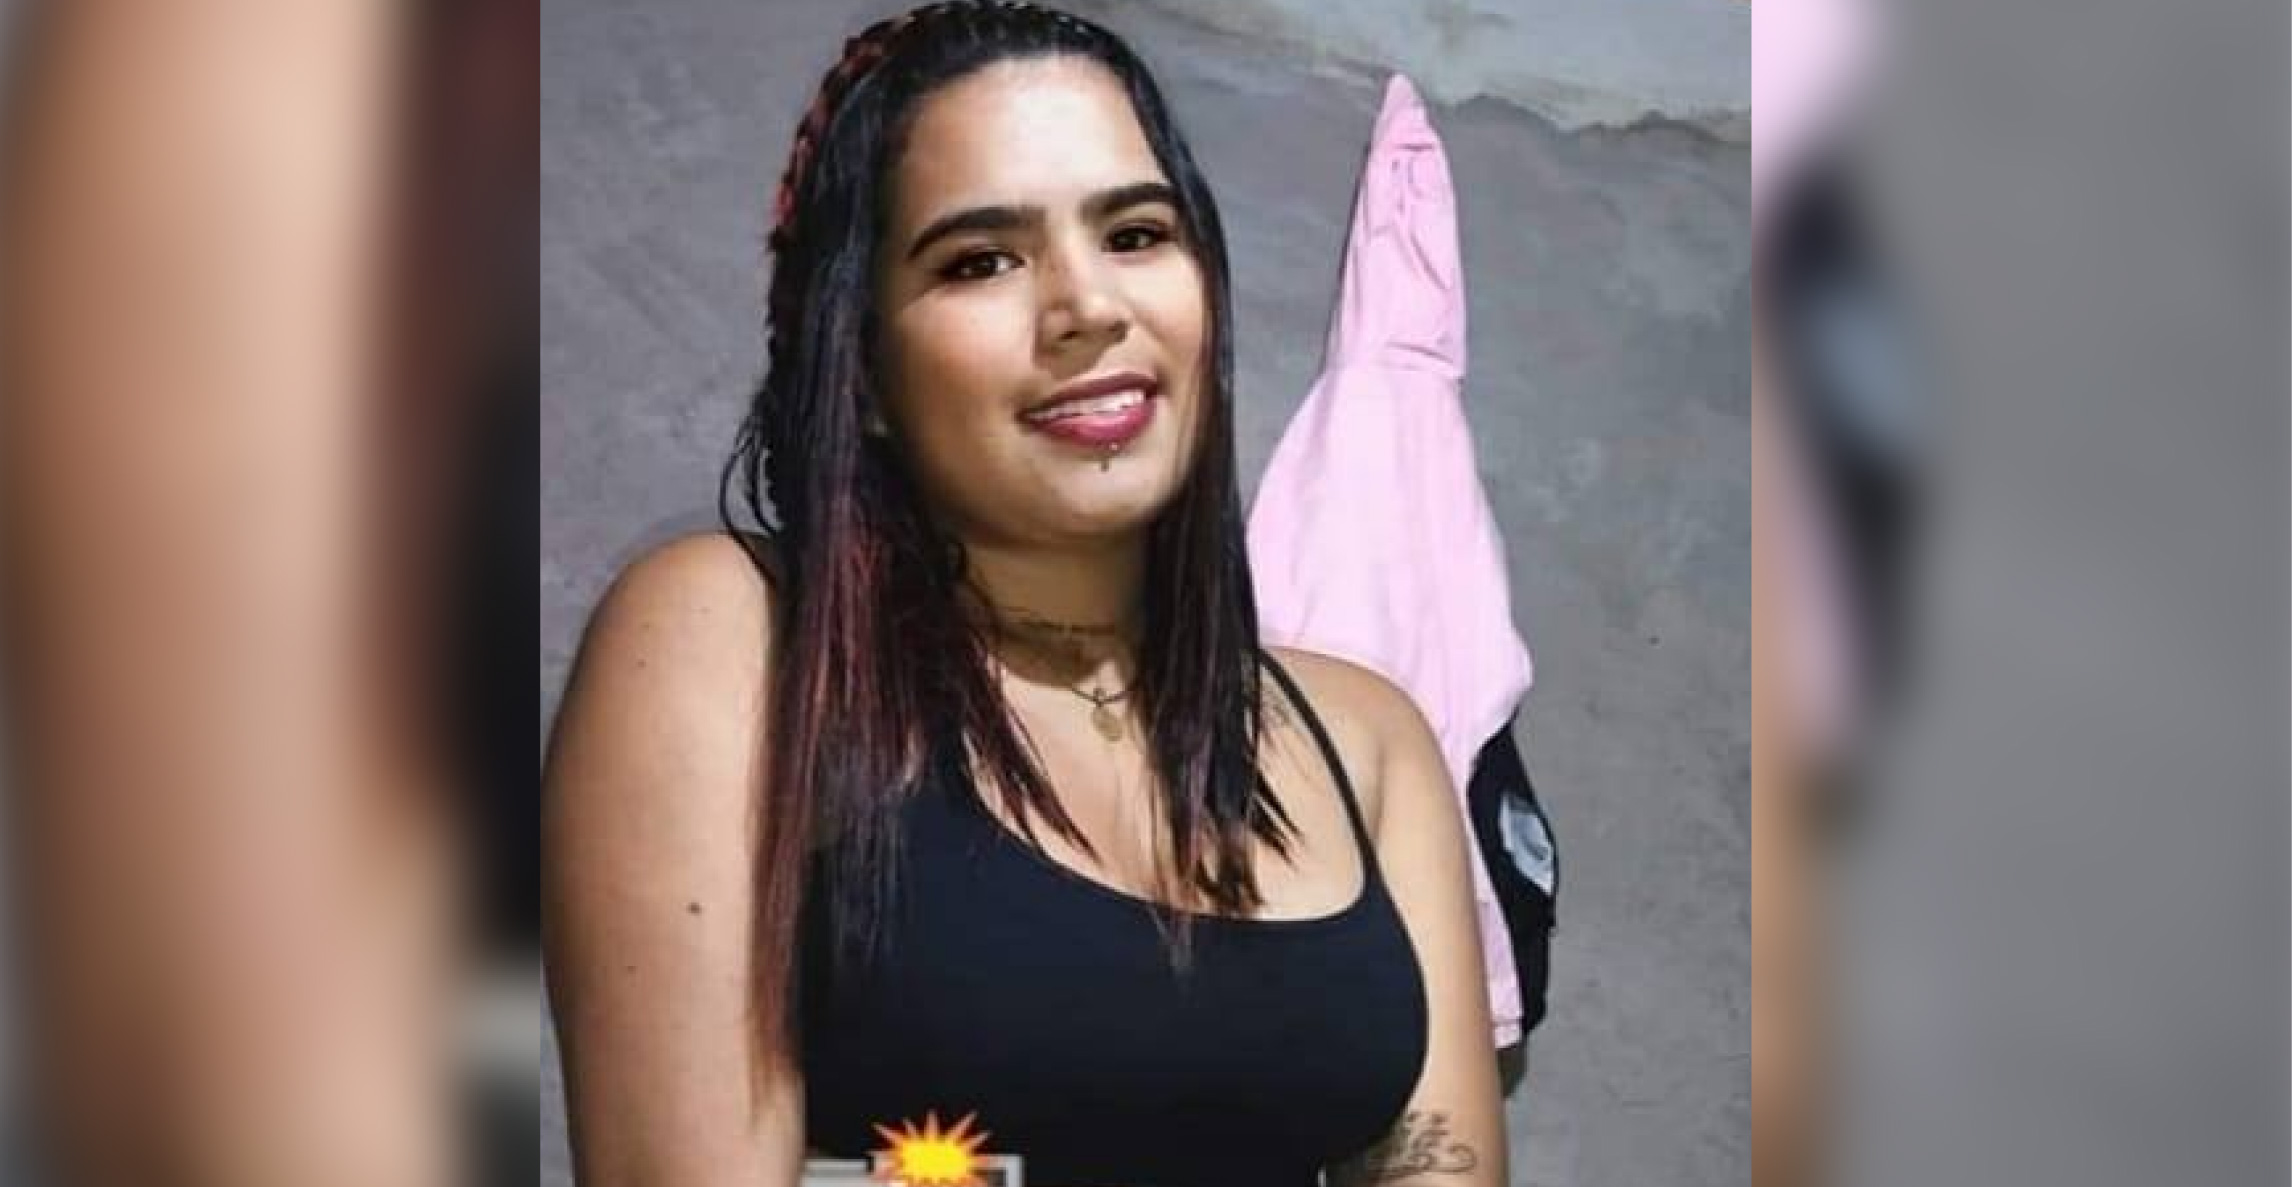 Luto por nuevo feminicidio en Medellín: la víctima era oriunda de Nariño, Antioquia